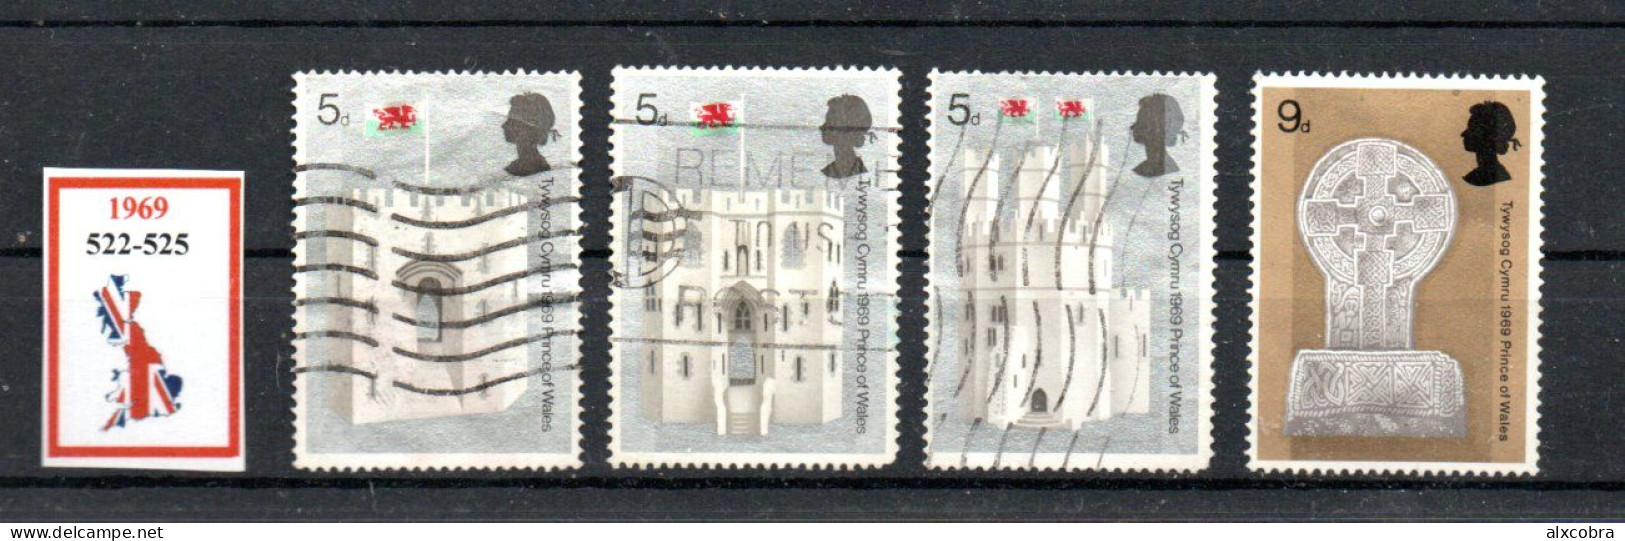 United Kingdom Castles 1969 Michel 522-525 3used 1MNH - Usati